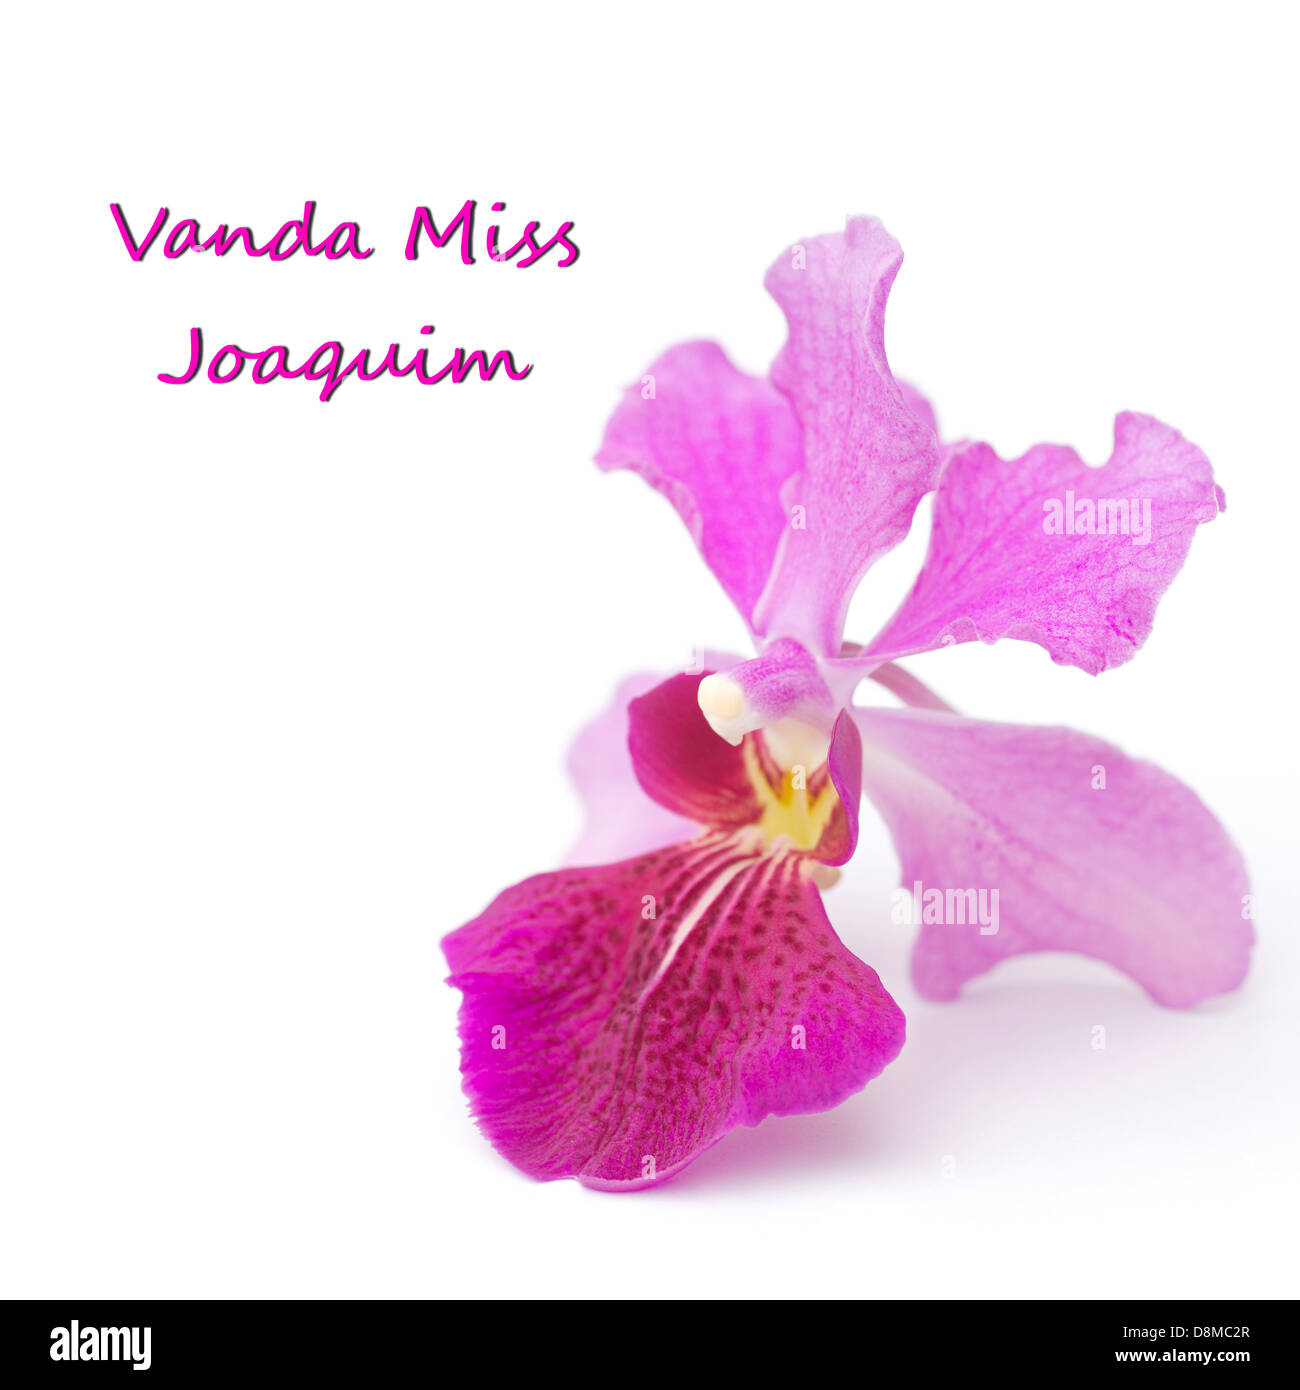 Vanda Miss Joaquim, Singapore's National Flower Stock Photo